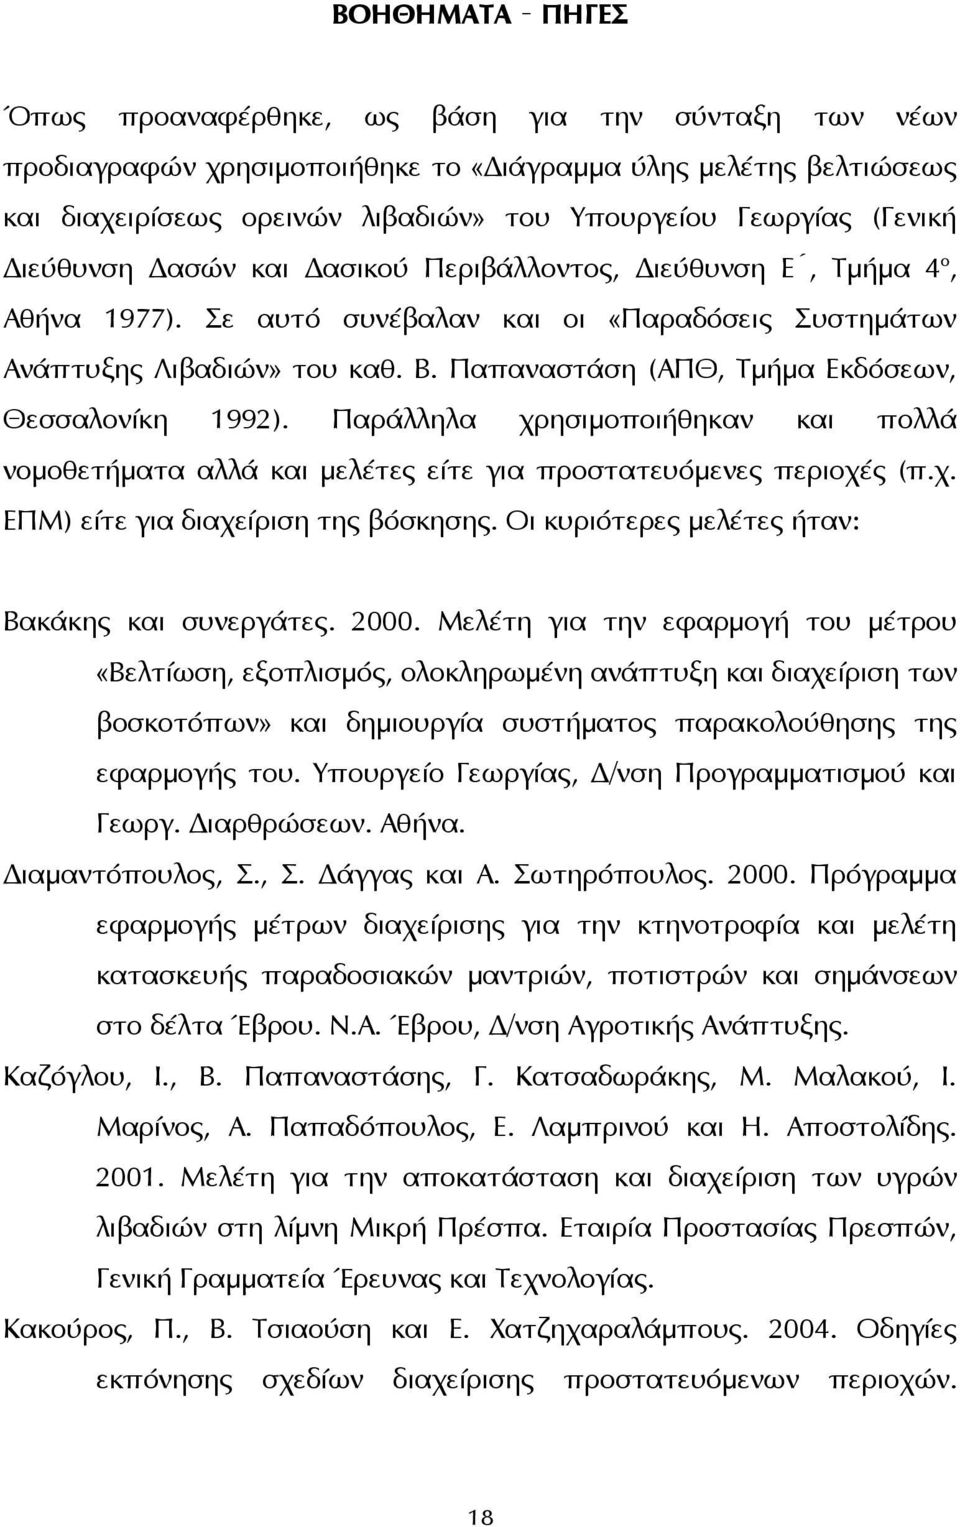 Παπαναστάση (ΑΠΘ, Τμήμα Εκδόσεων, Θεσσαλονίκη 1992). Παράλληλα χρησιμοποιήθηκαν και πολλά νομοθετήματα αλλά και μελέτες είτε για προστατευόμενες περιοχές (π.χ. ΕΠΜ) είτε για διαχείριση της βόσκησης.